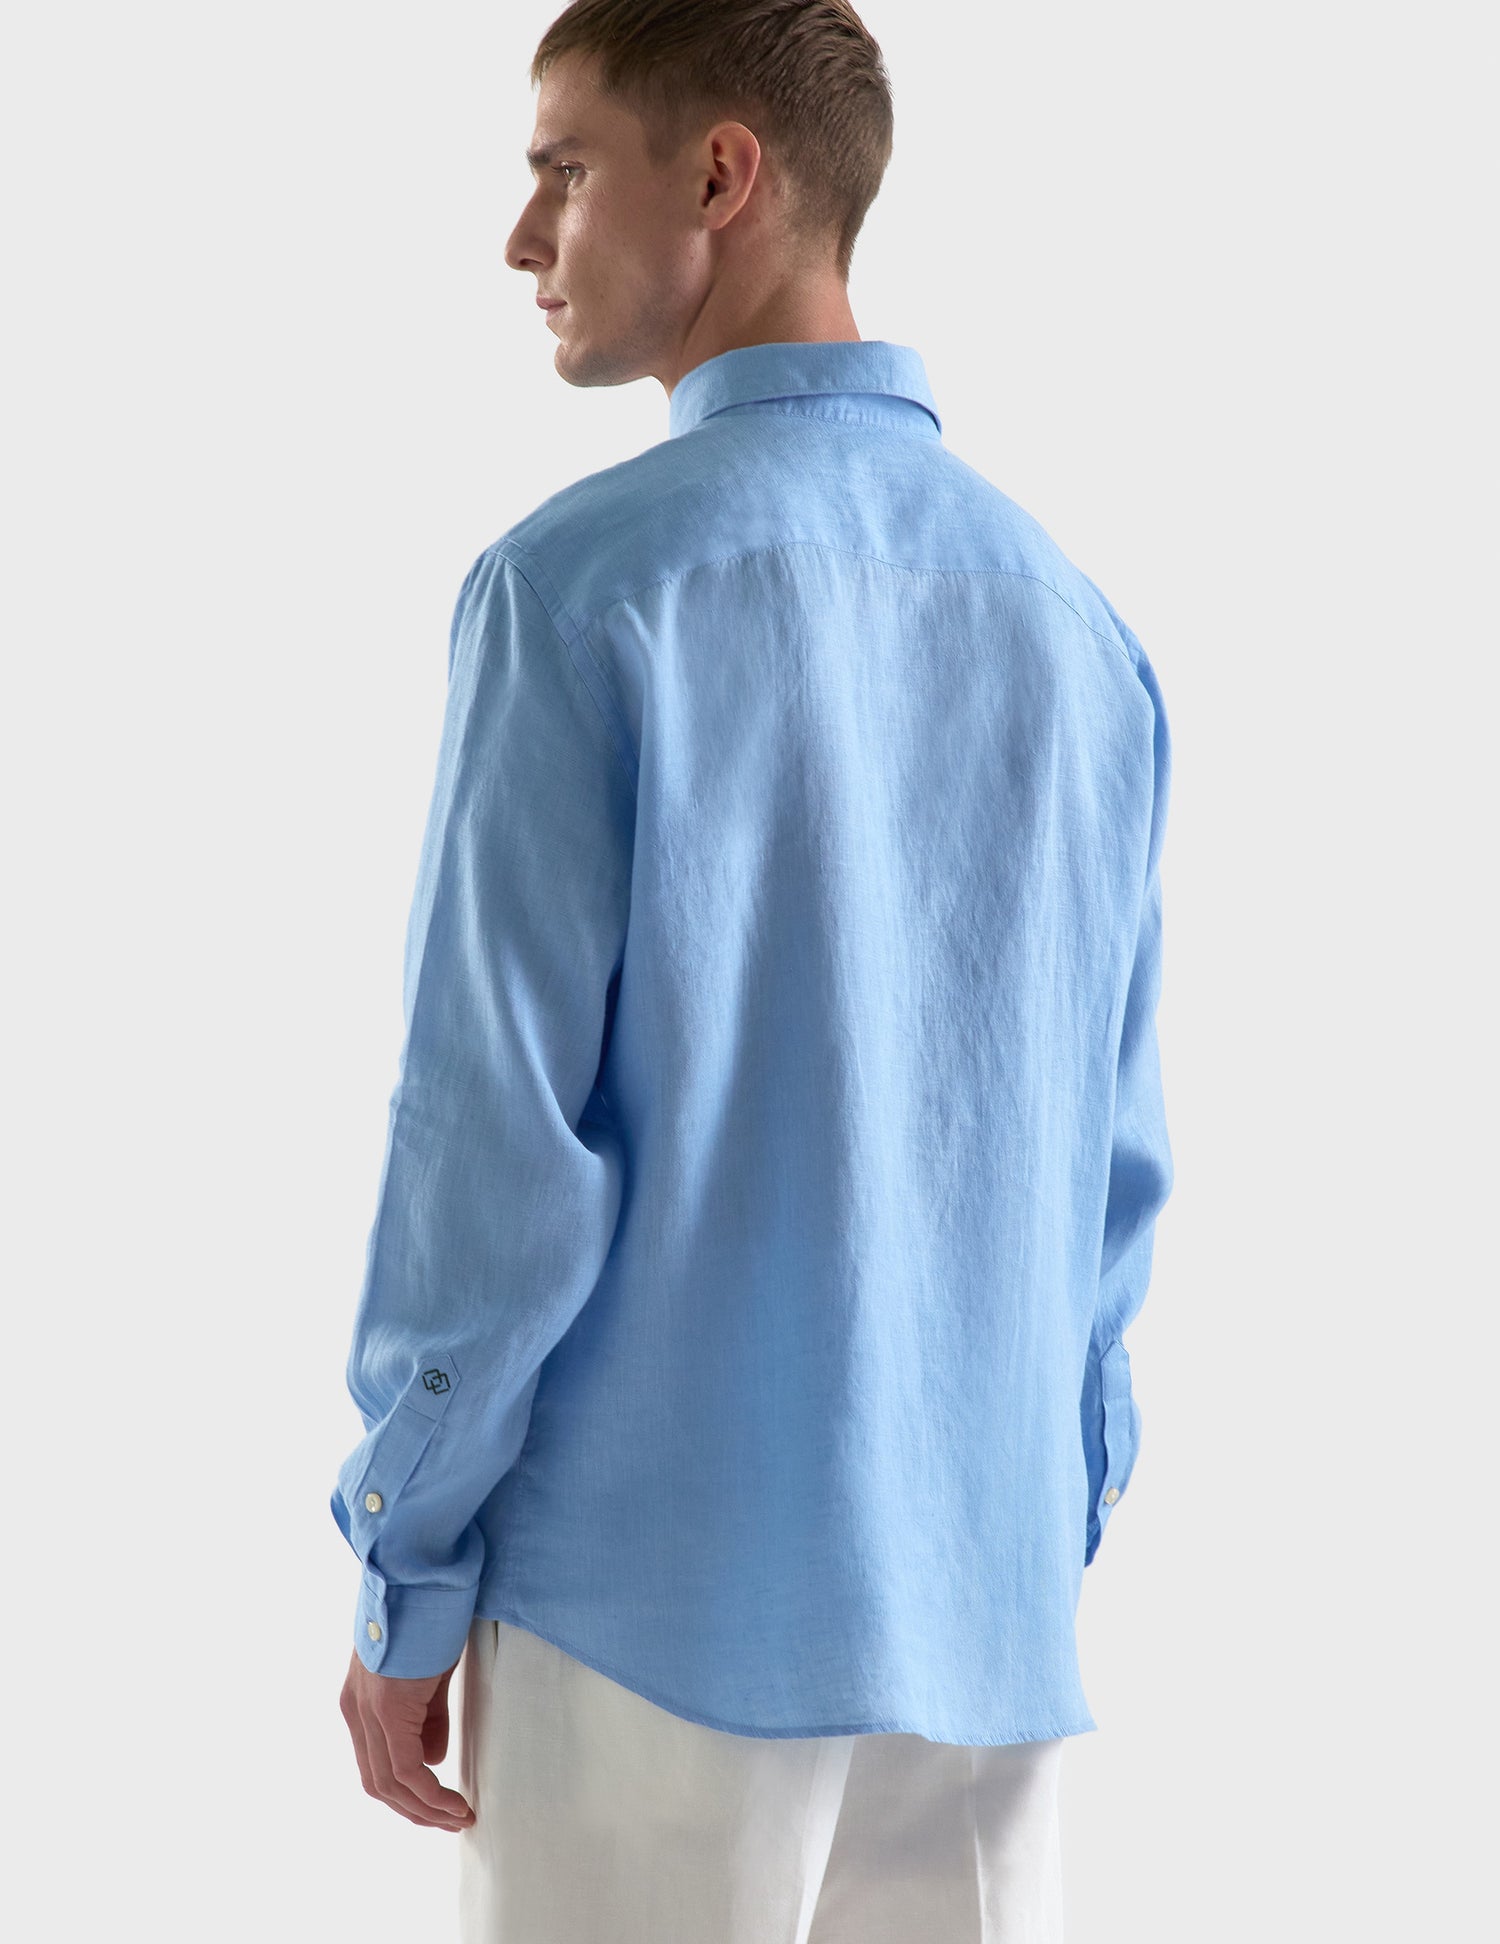 Gaspard shirt in blue linen - Linen - American Collar#2